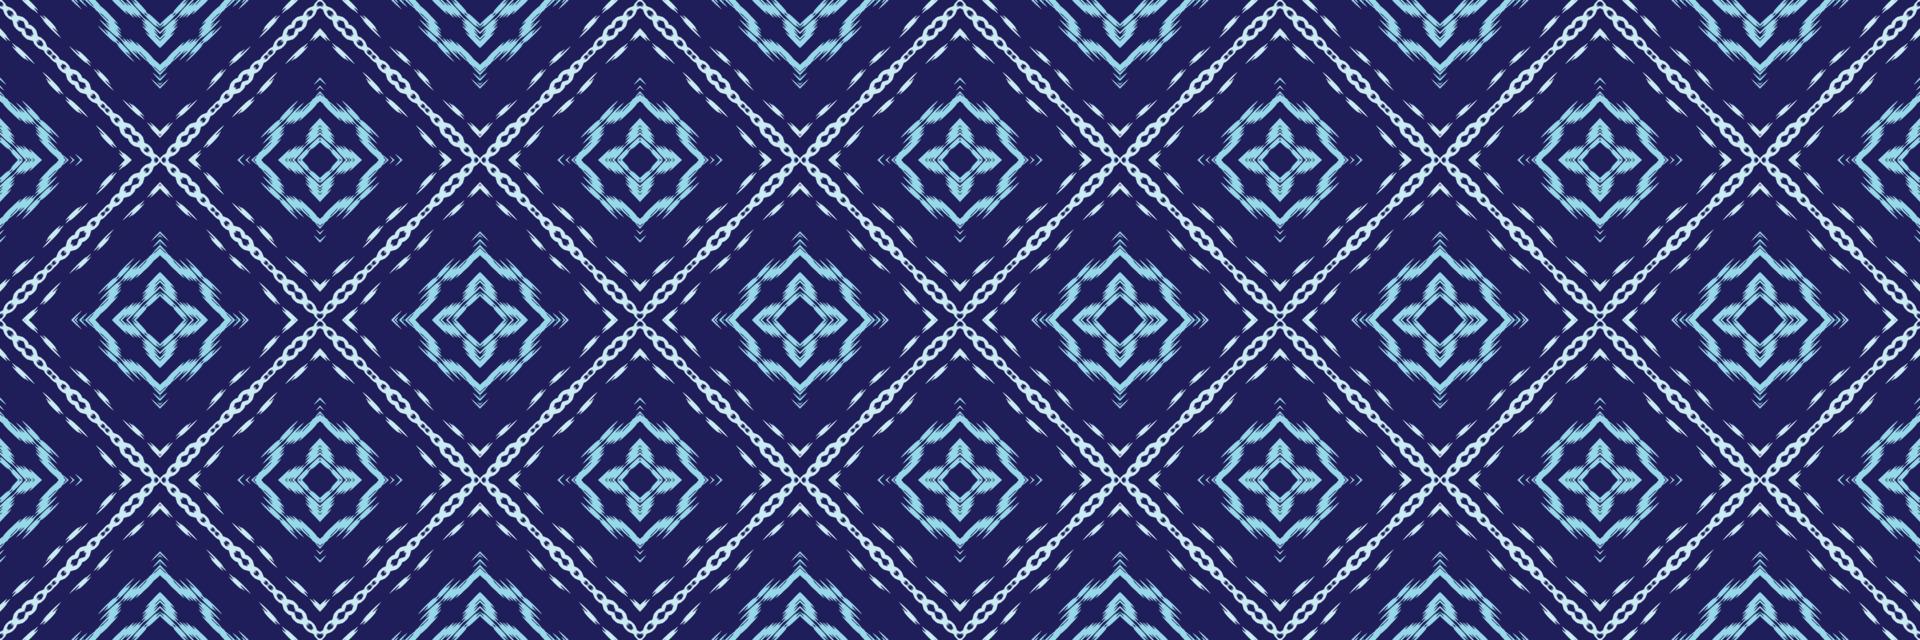 batik textil- ikat diamant sömlös mönster digital vektor design för skriva ut saree kurti borneo tyg gräns borsta symboler färgrutor bomull